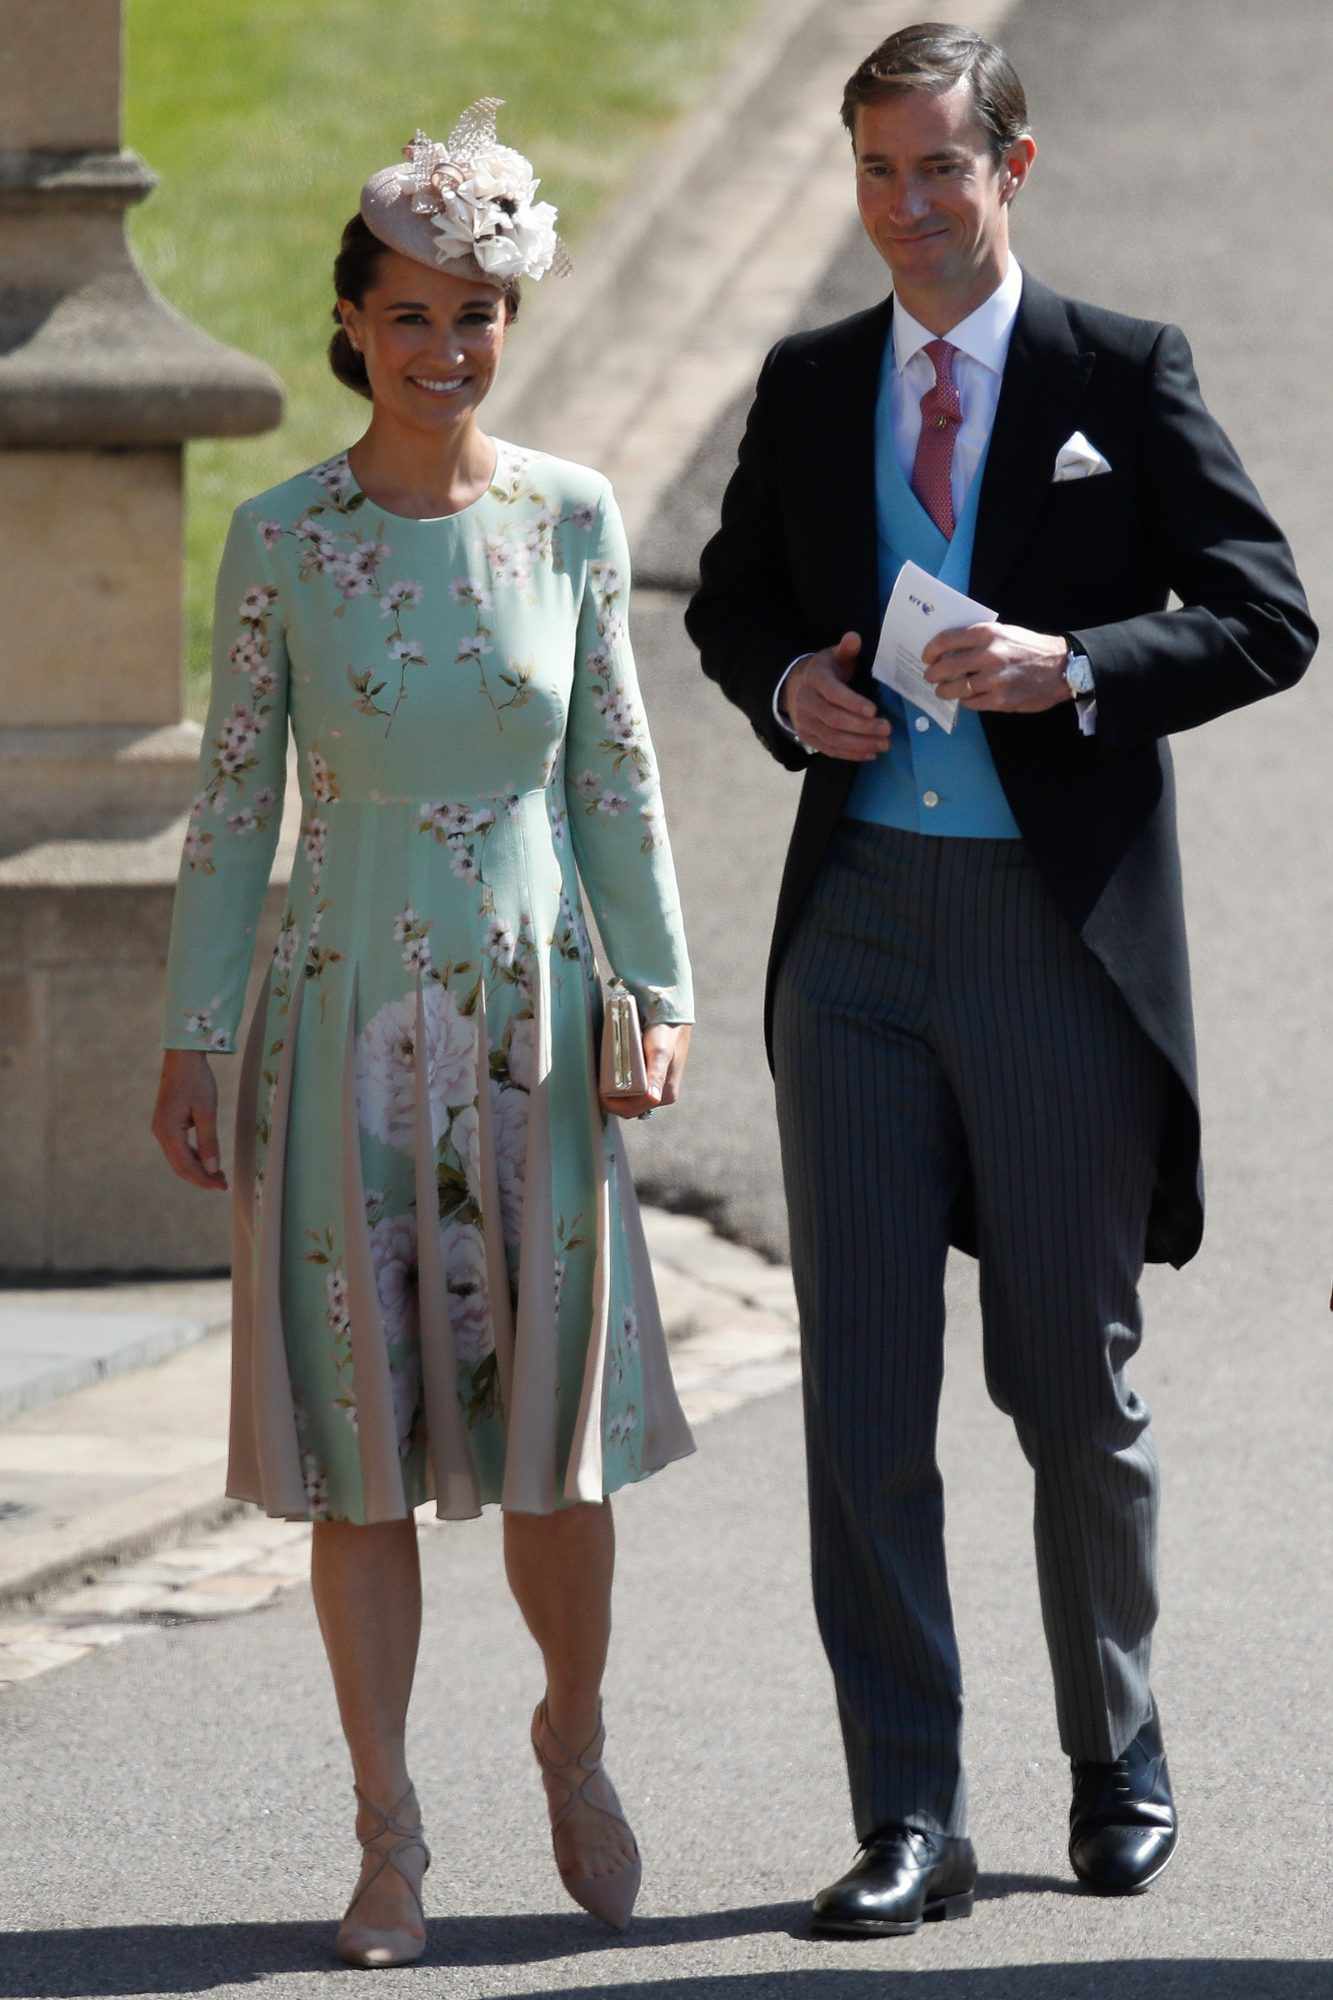 Pippa Middleton and James Matthews at Royal Wedding 2018